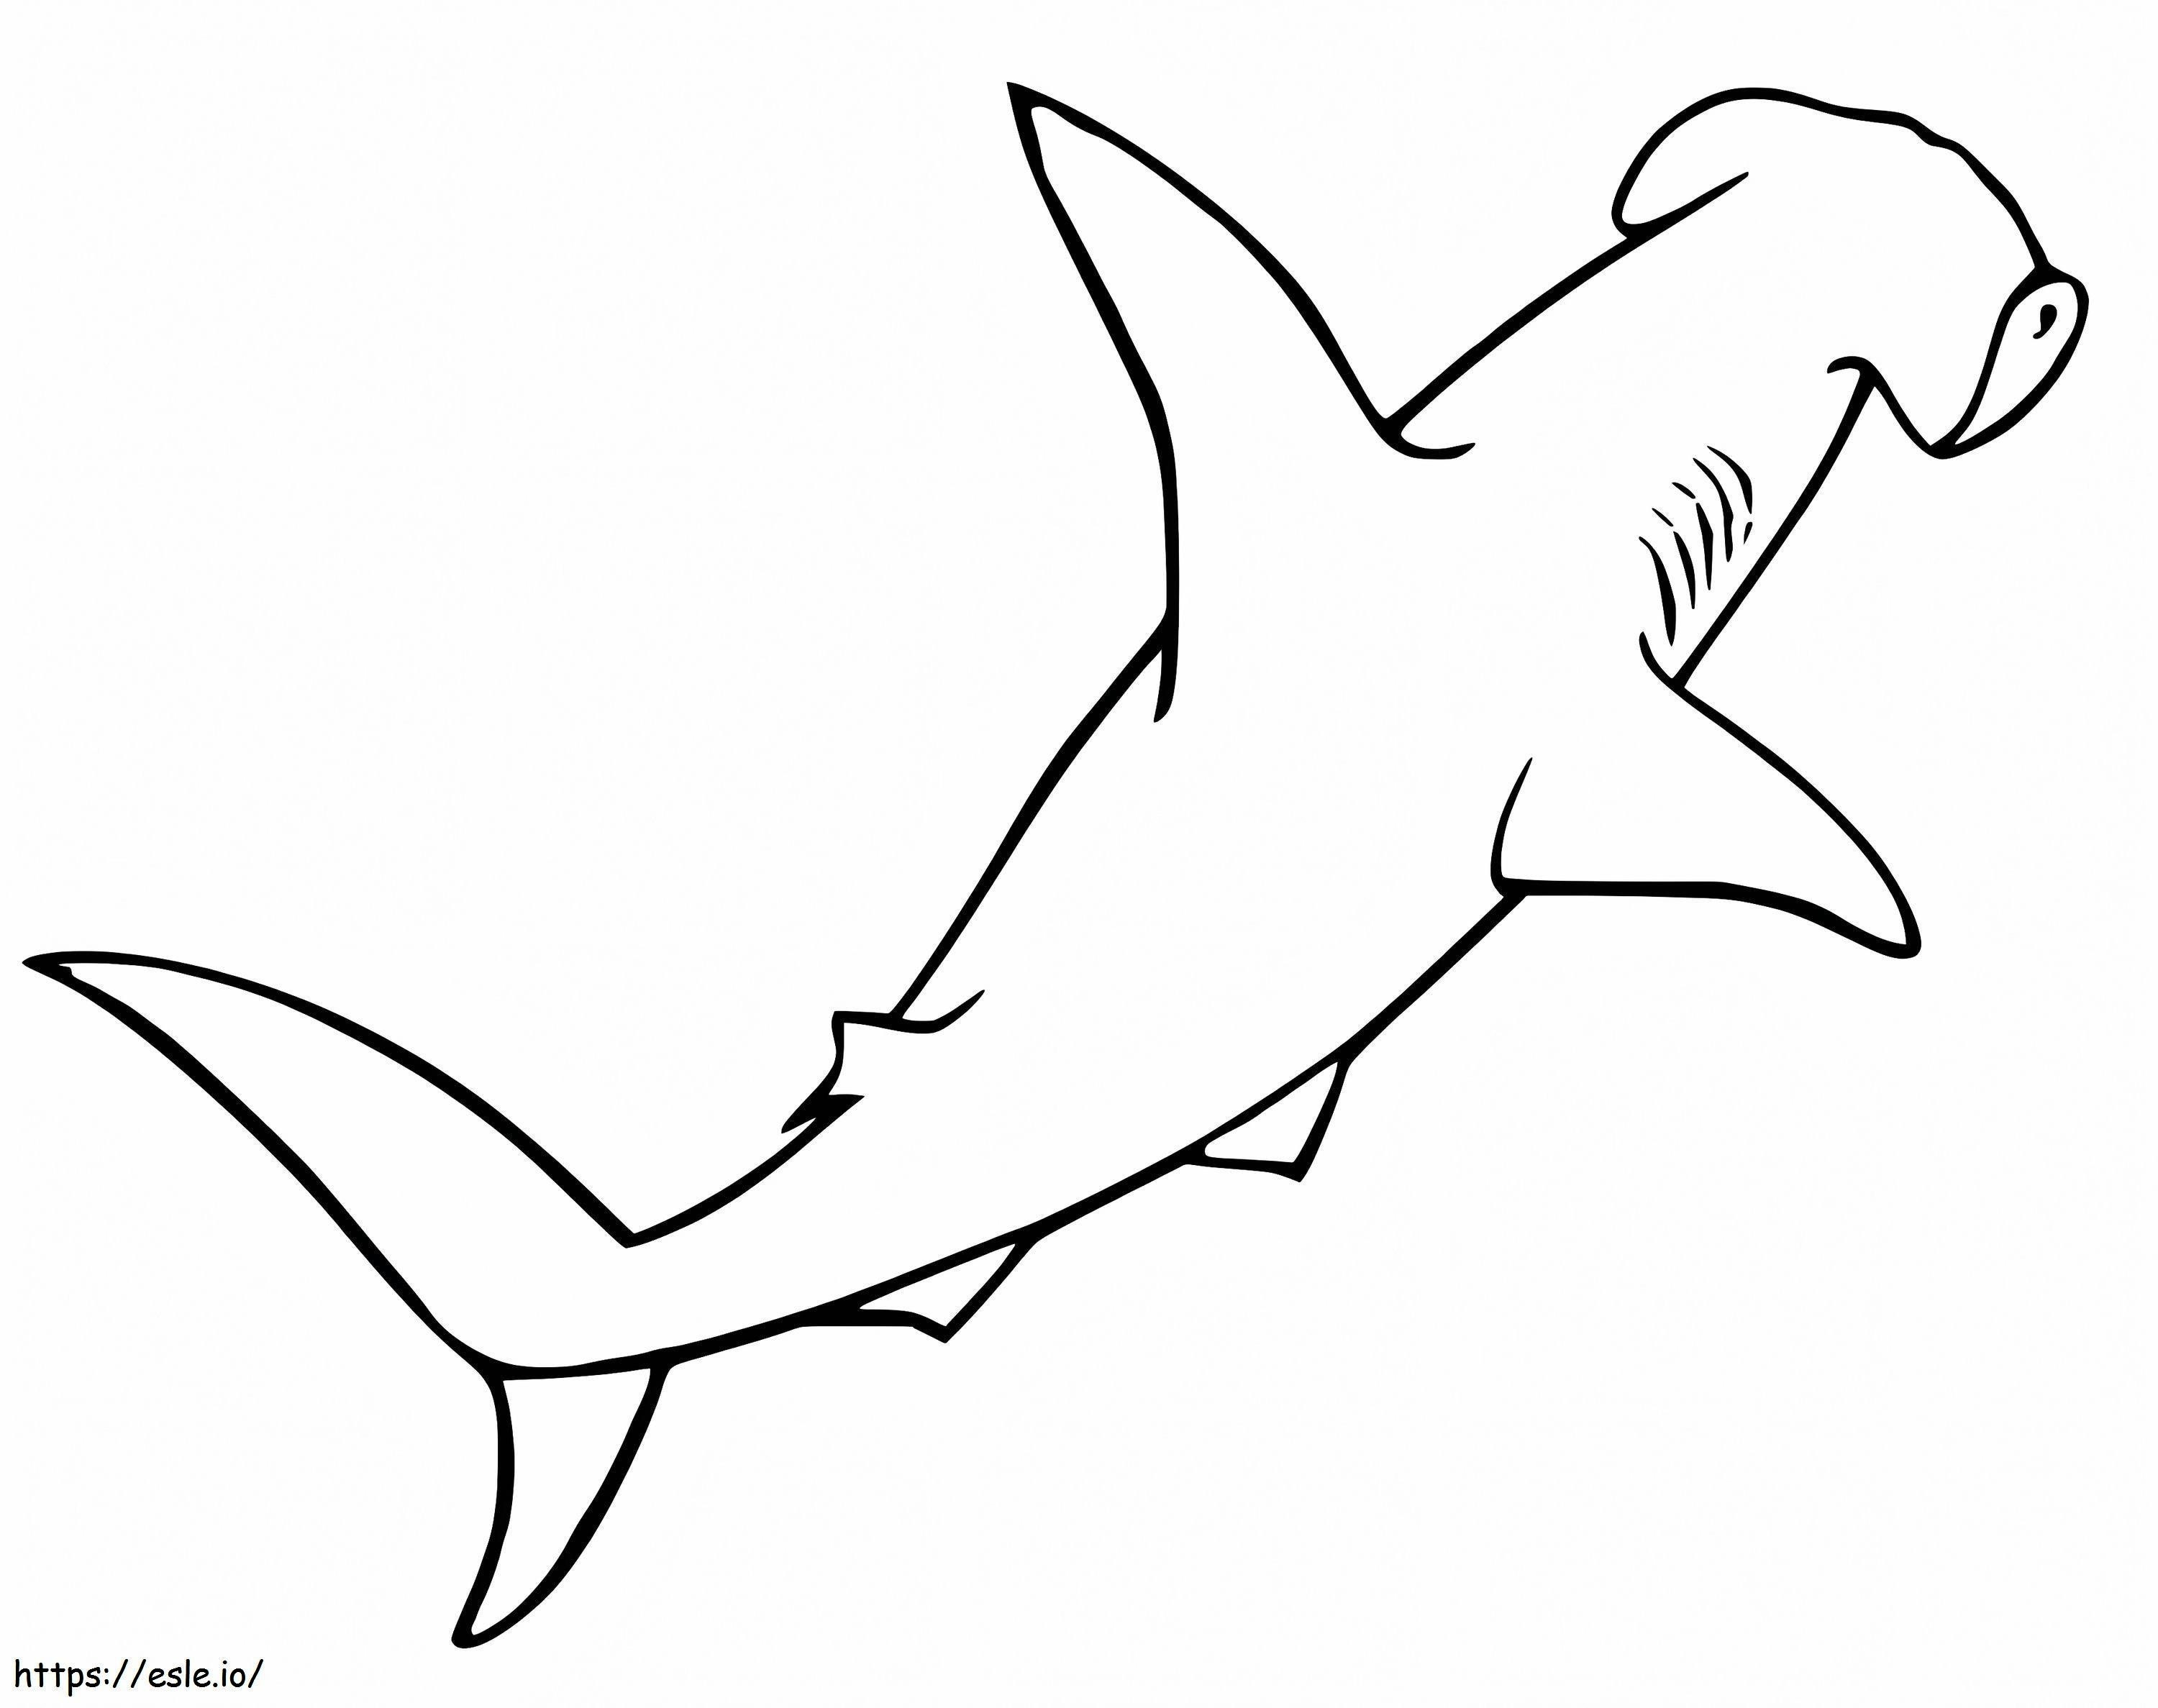 Tubarão-martelo 1 para colorir